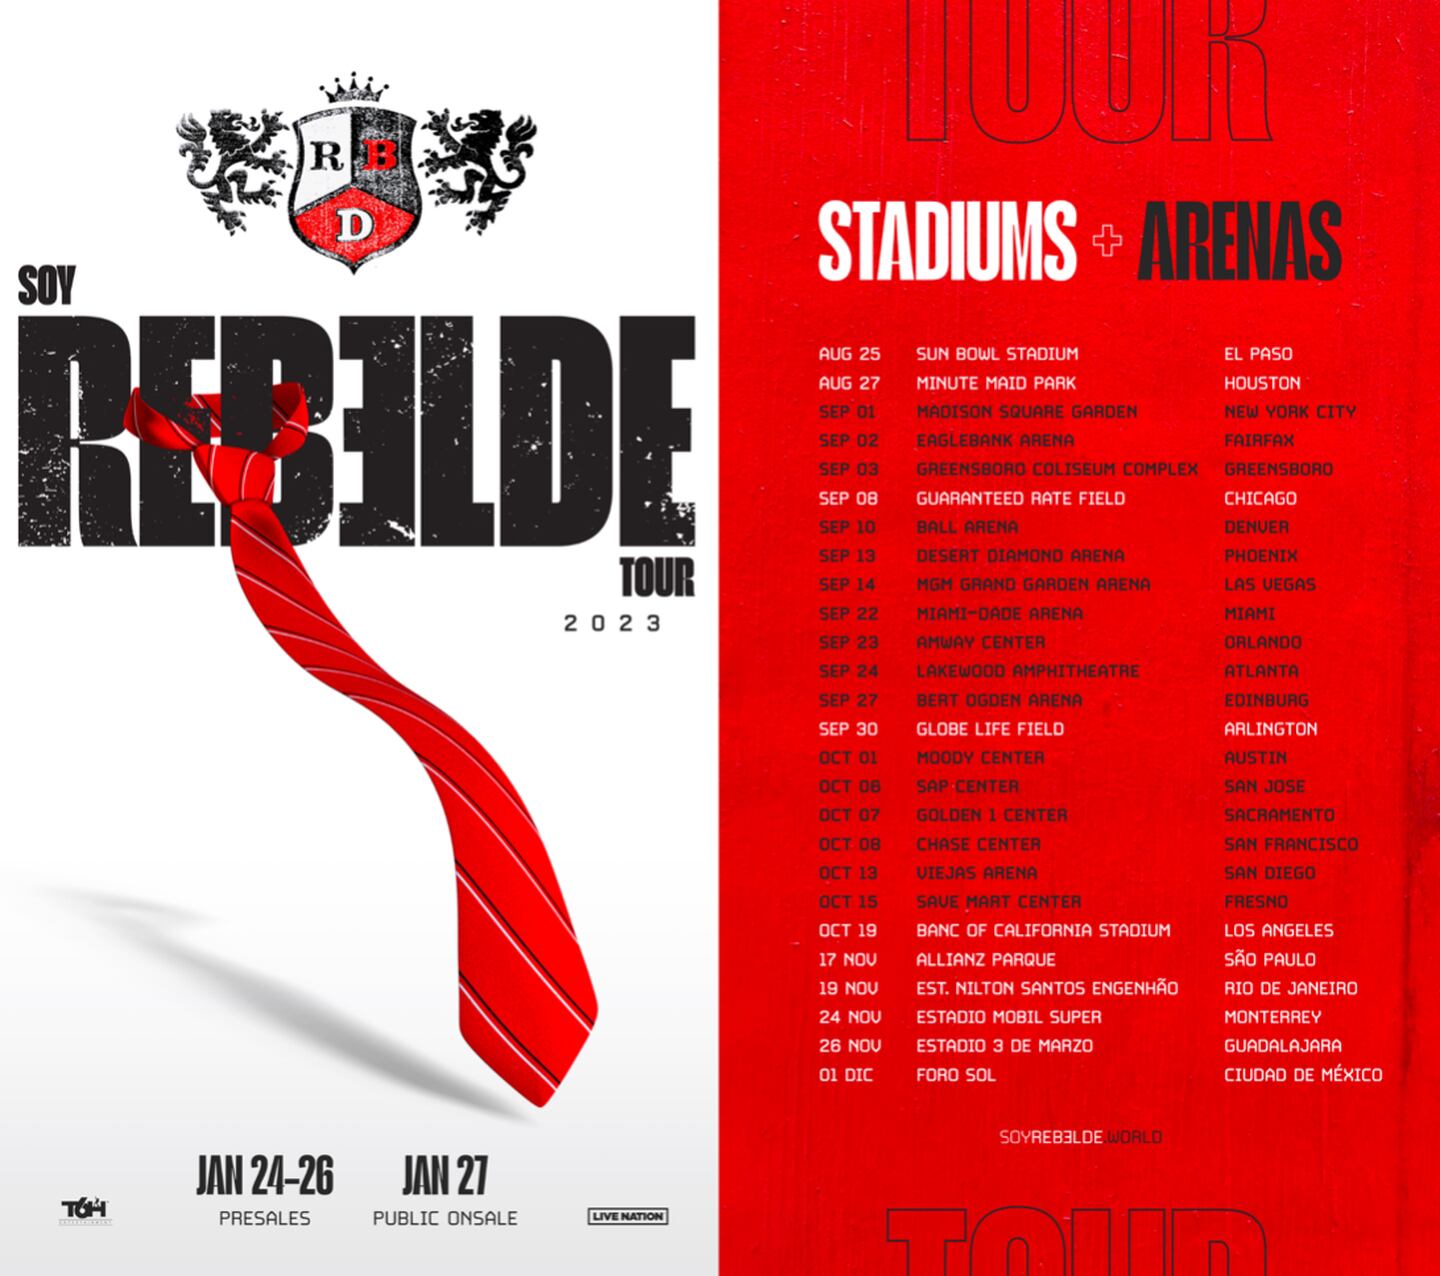 Soy Rebelde Tour